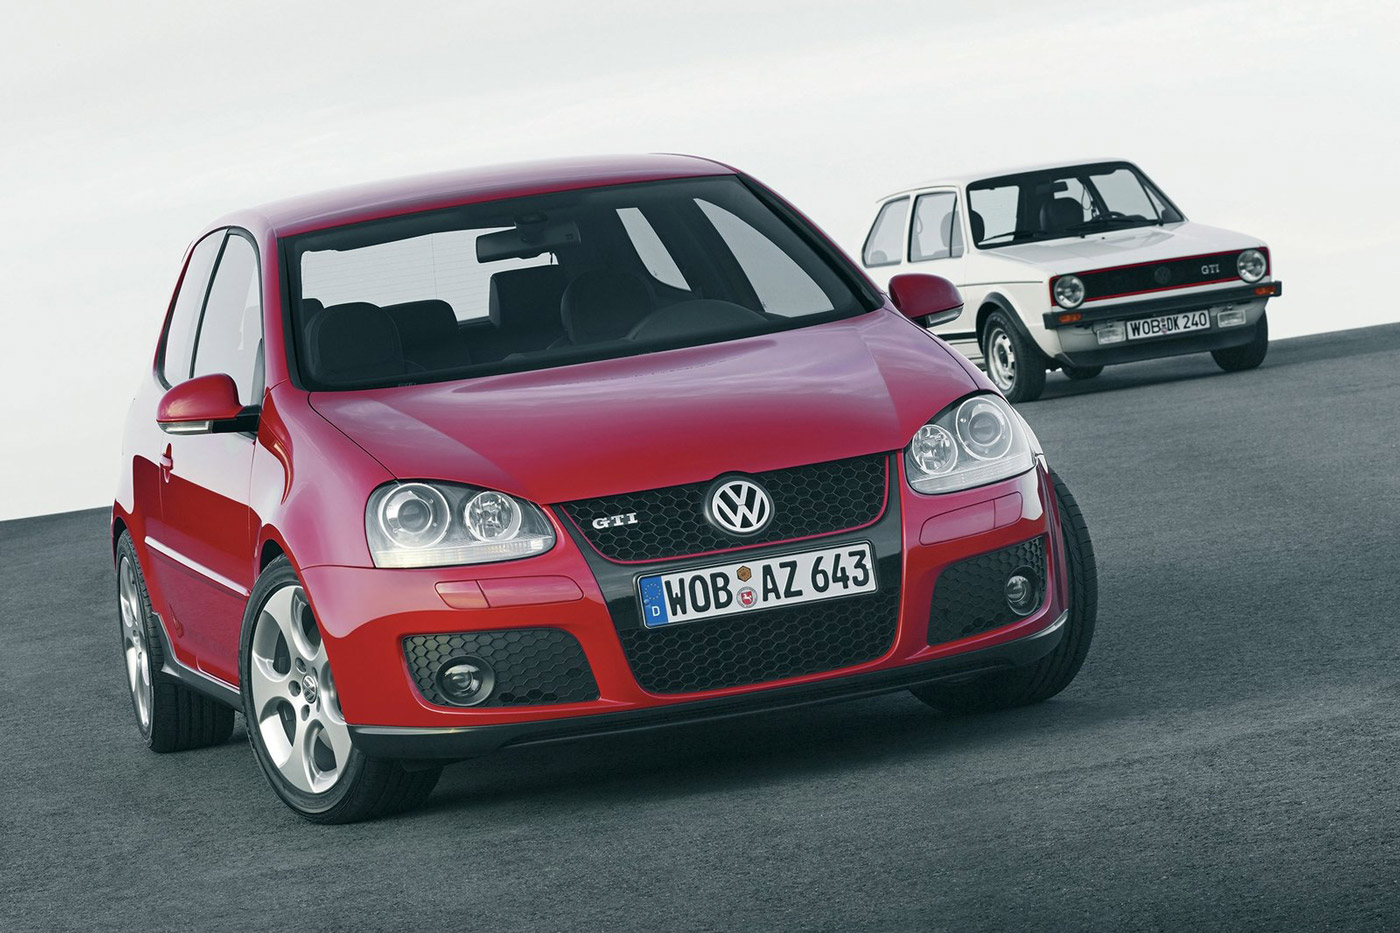 Gearceerd Rimpels idee Autoblog Garage: Volkswagen Golf GTI van Loek - Autoblog.nl